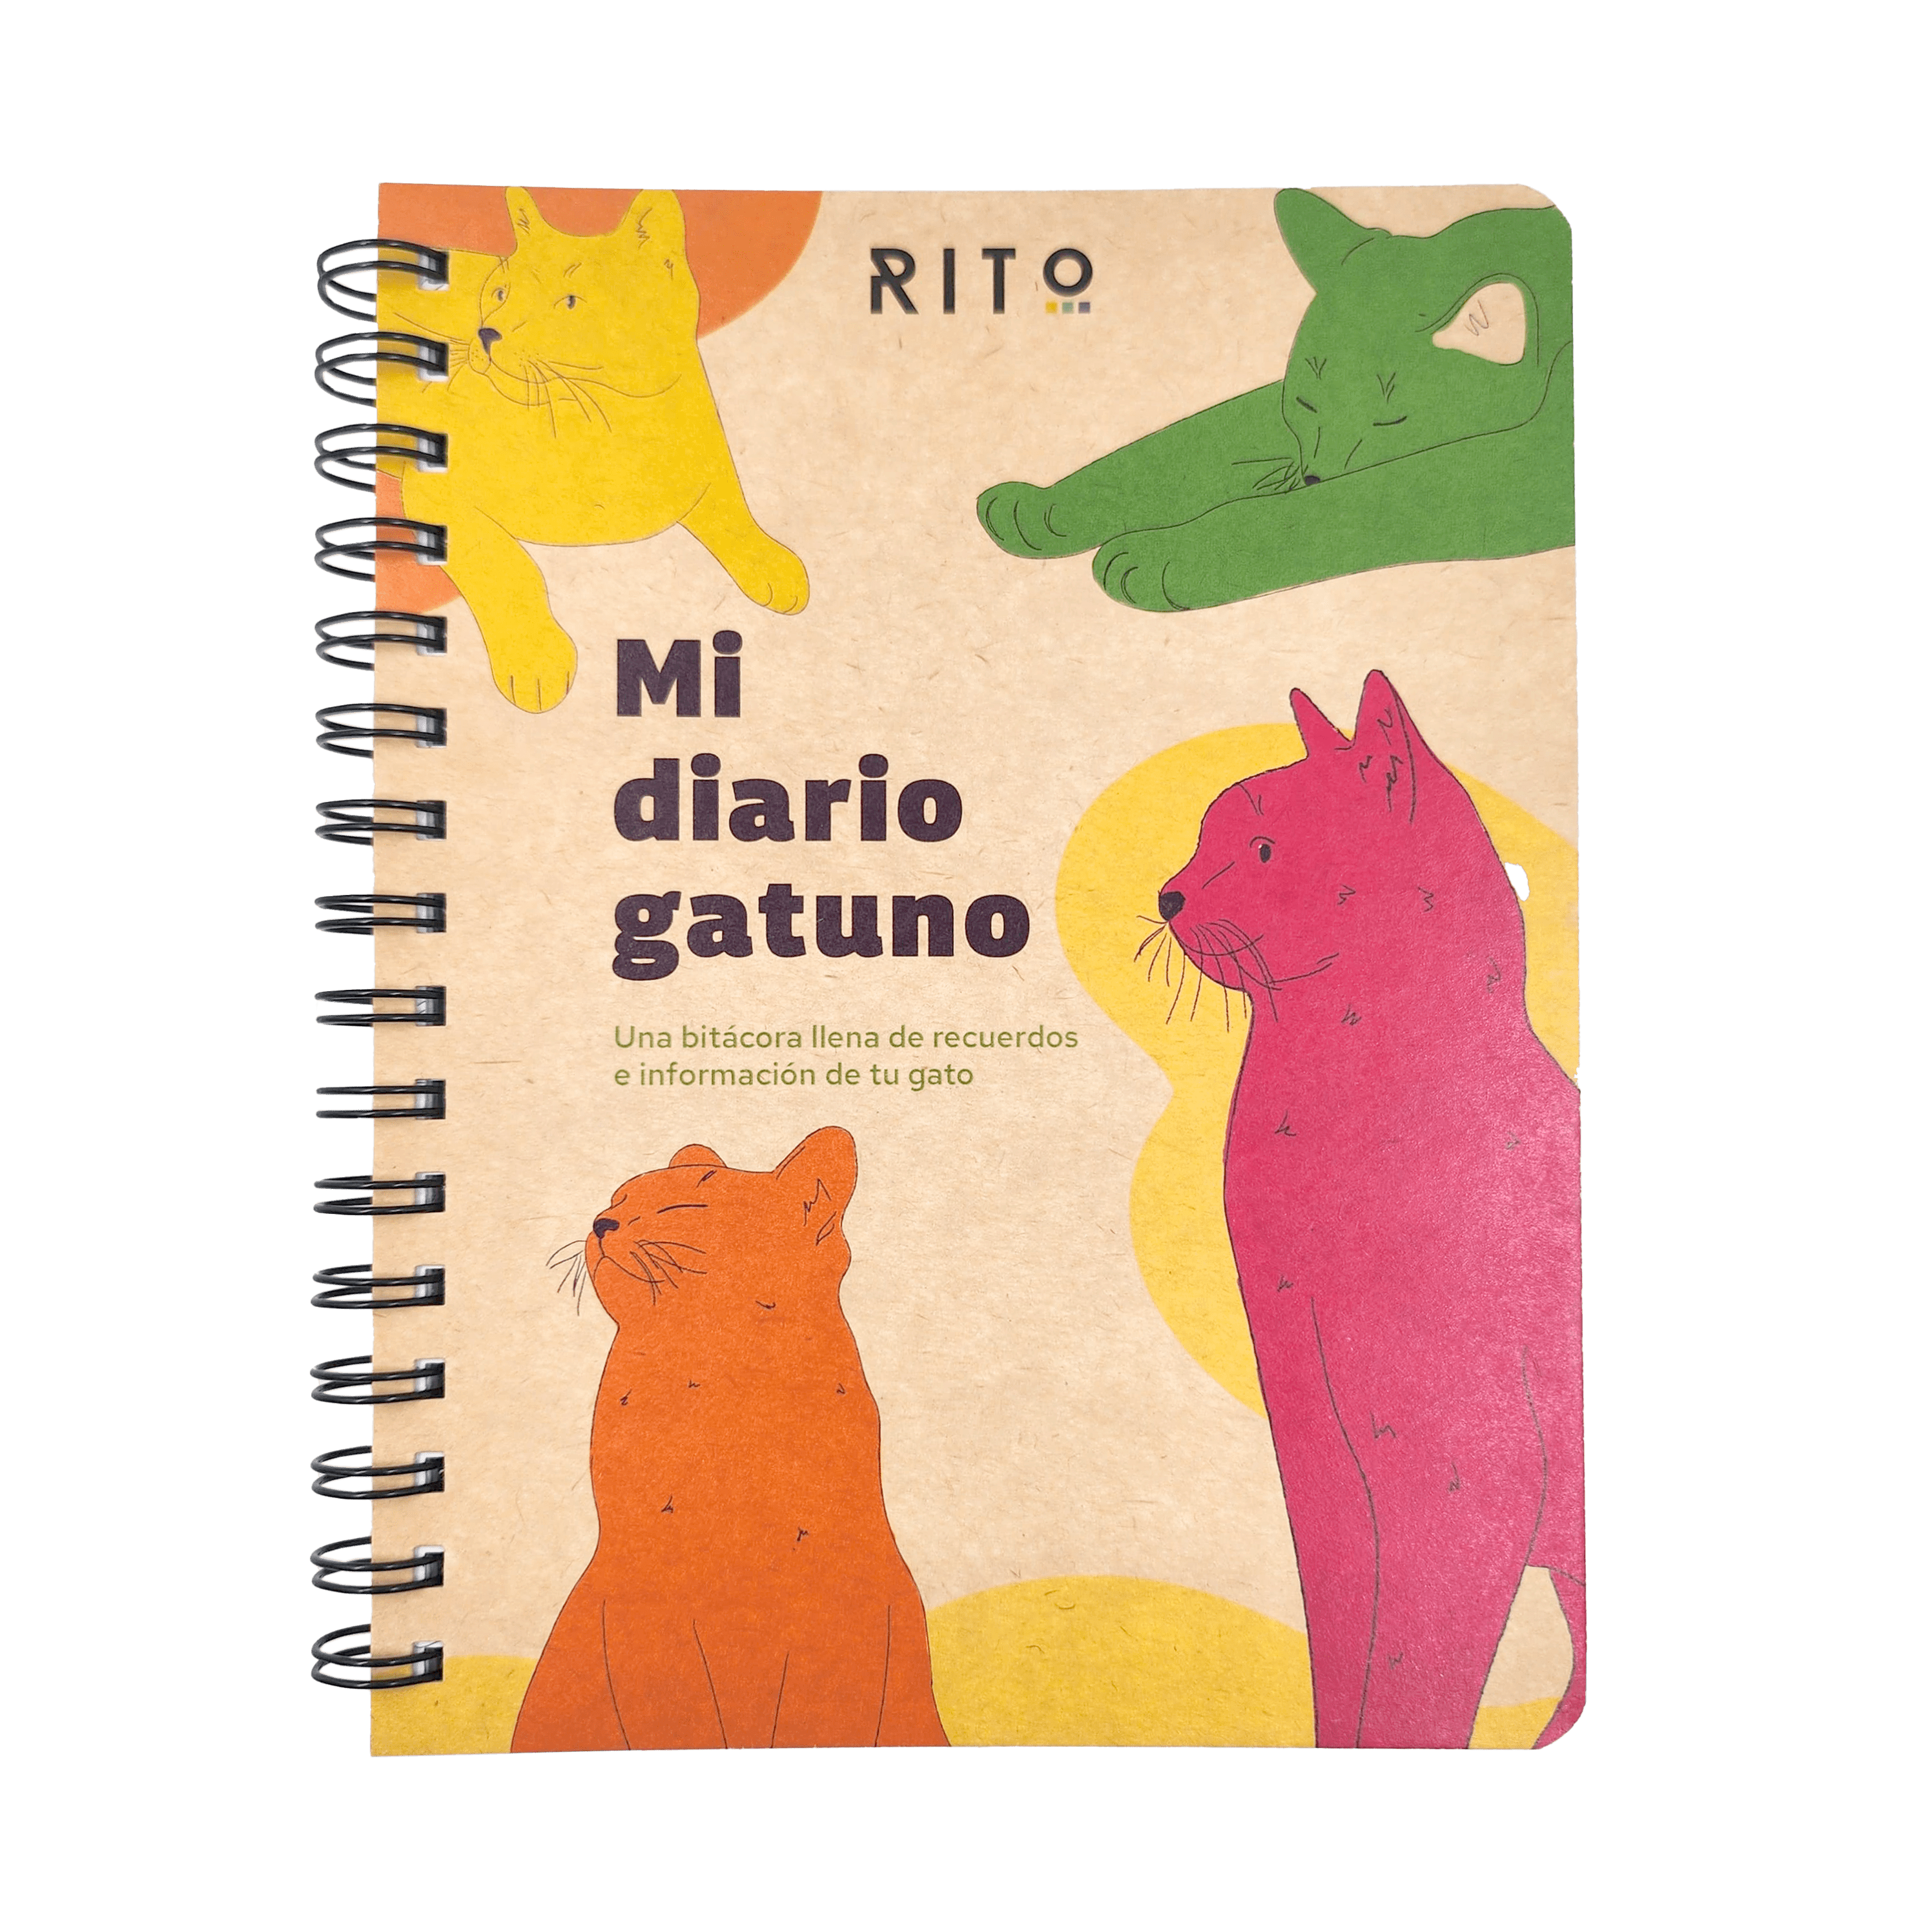 Diario de Viaje - Comprar en Cuadernos Rita